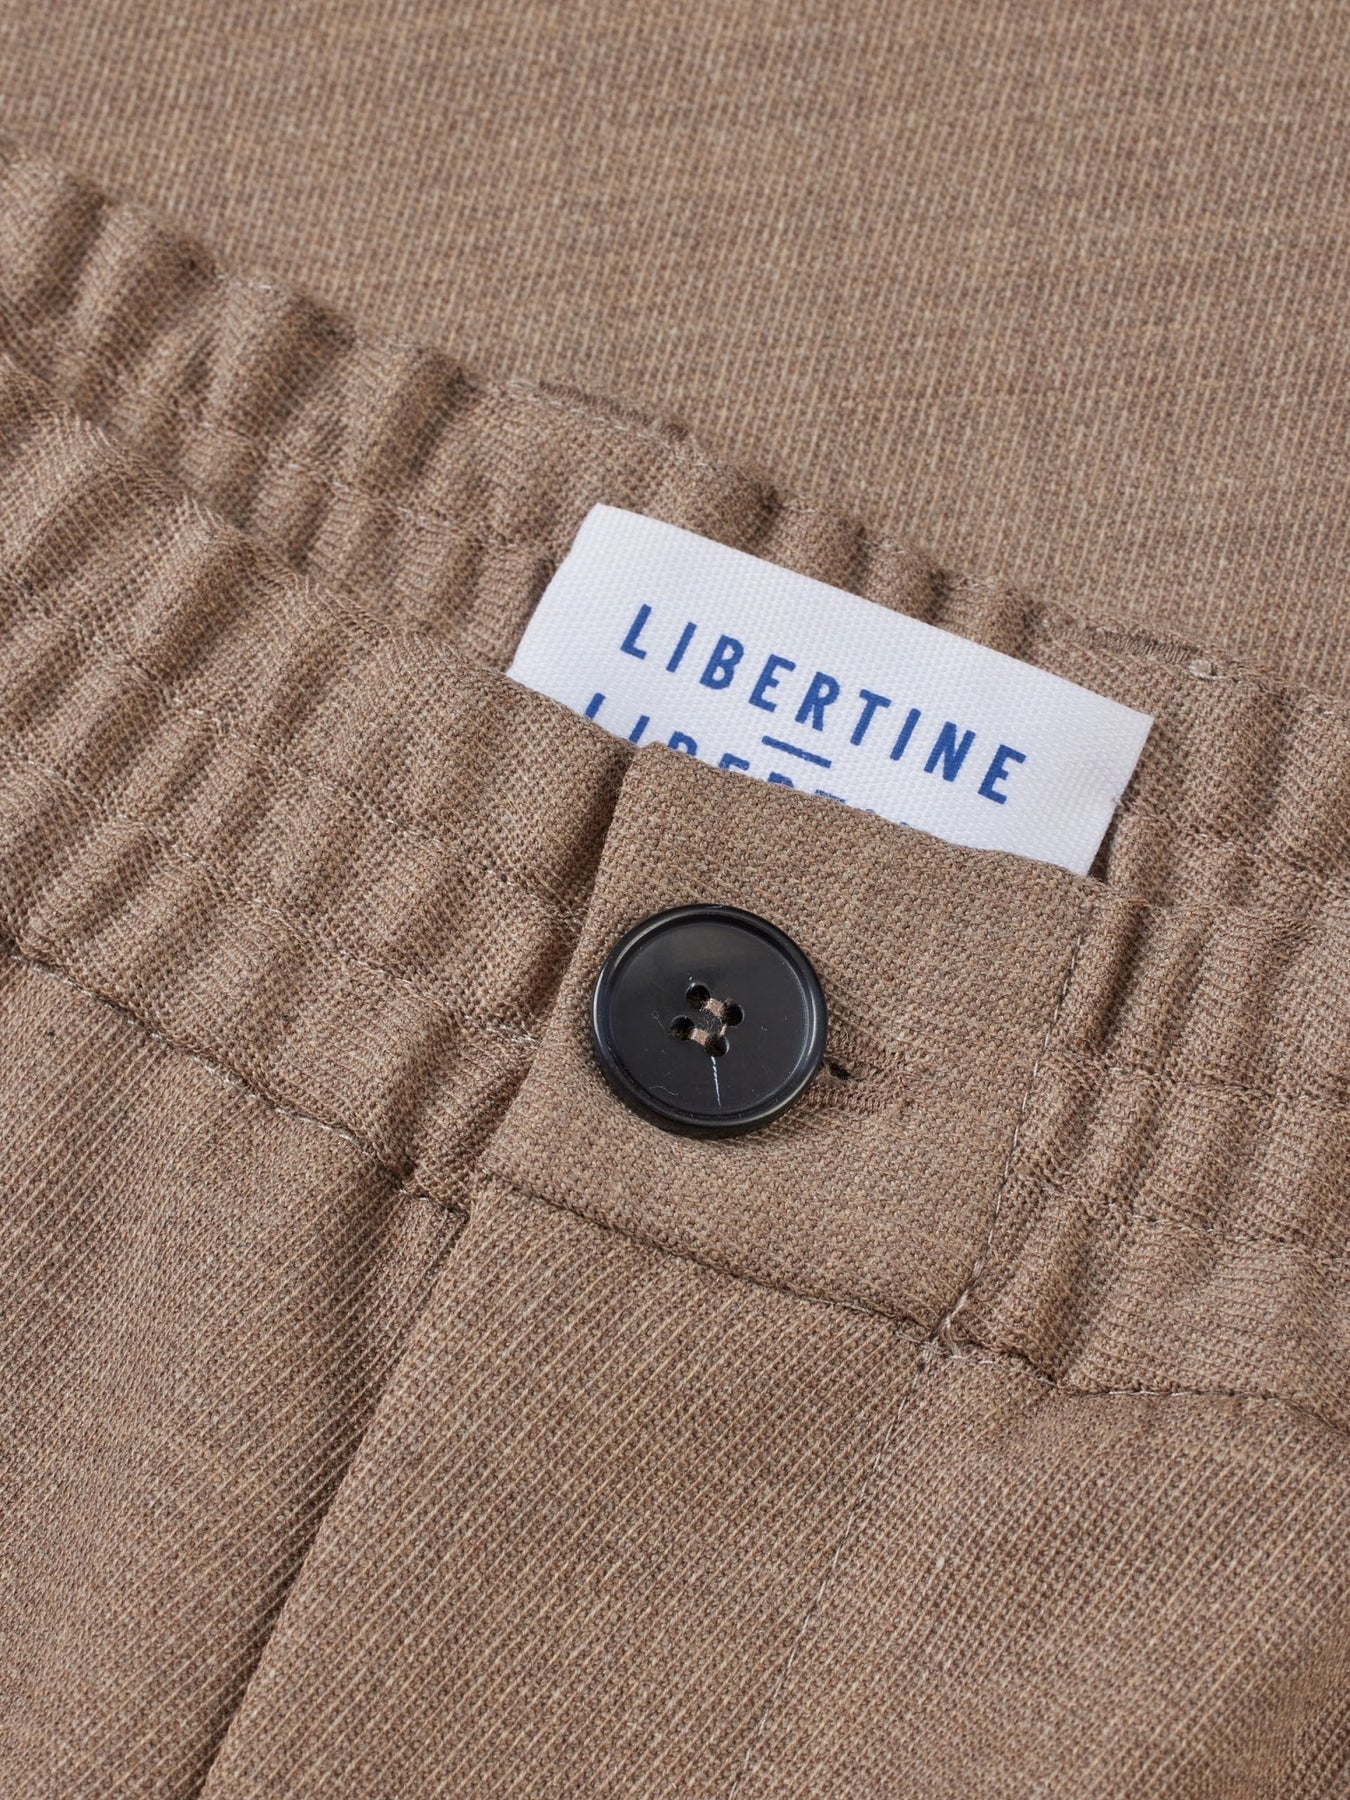 Libertine Libertine Agency Bukse Khaki - modostore.no